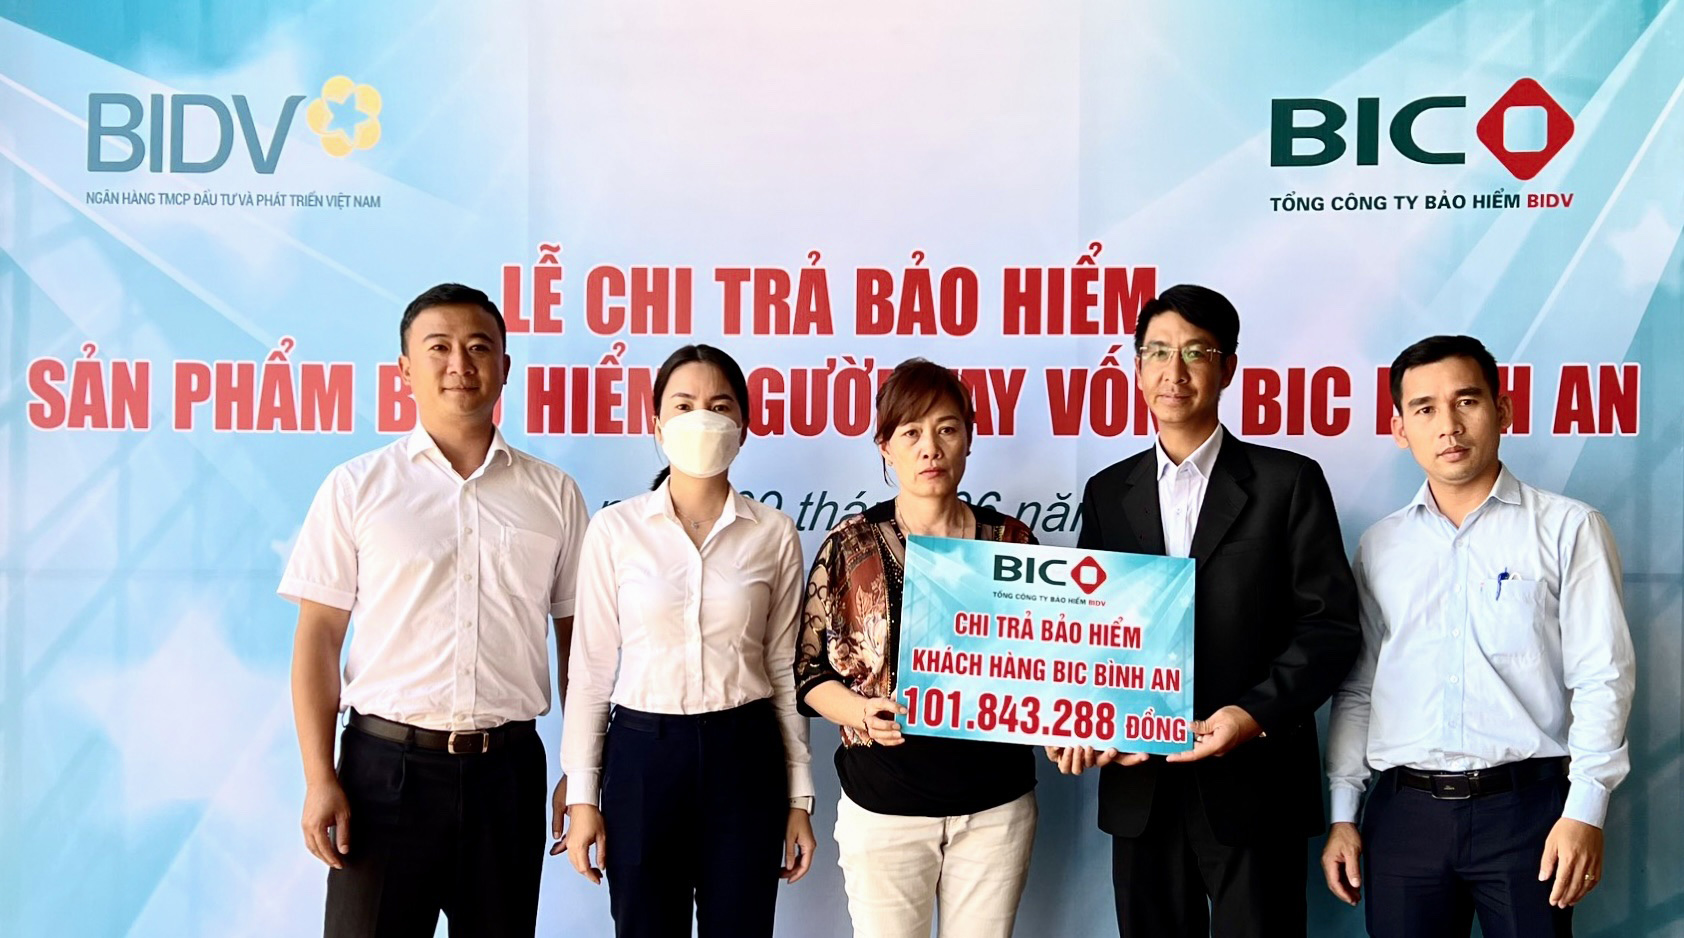 BIC Lâm Đồng chi trả bảo hiểm BIC Bình An tại Lâm Hà